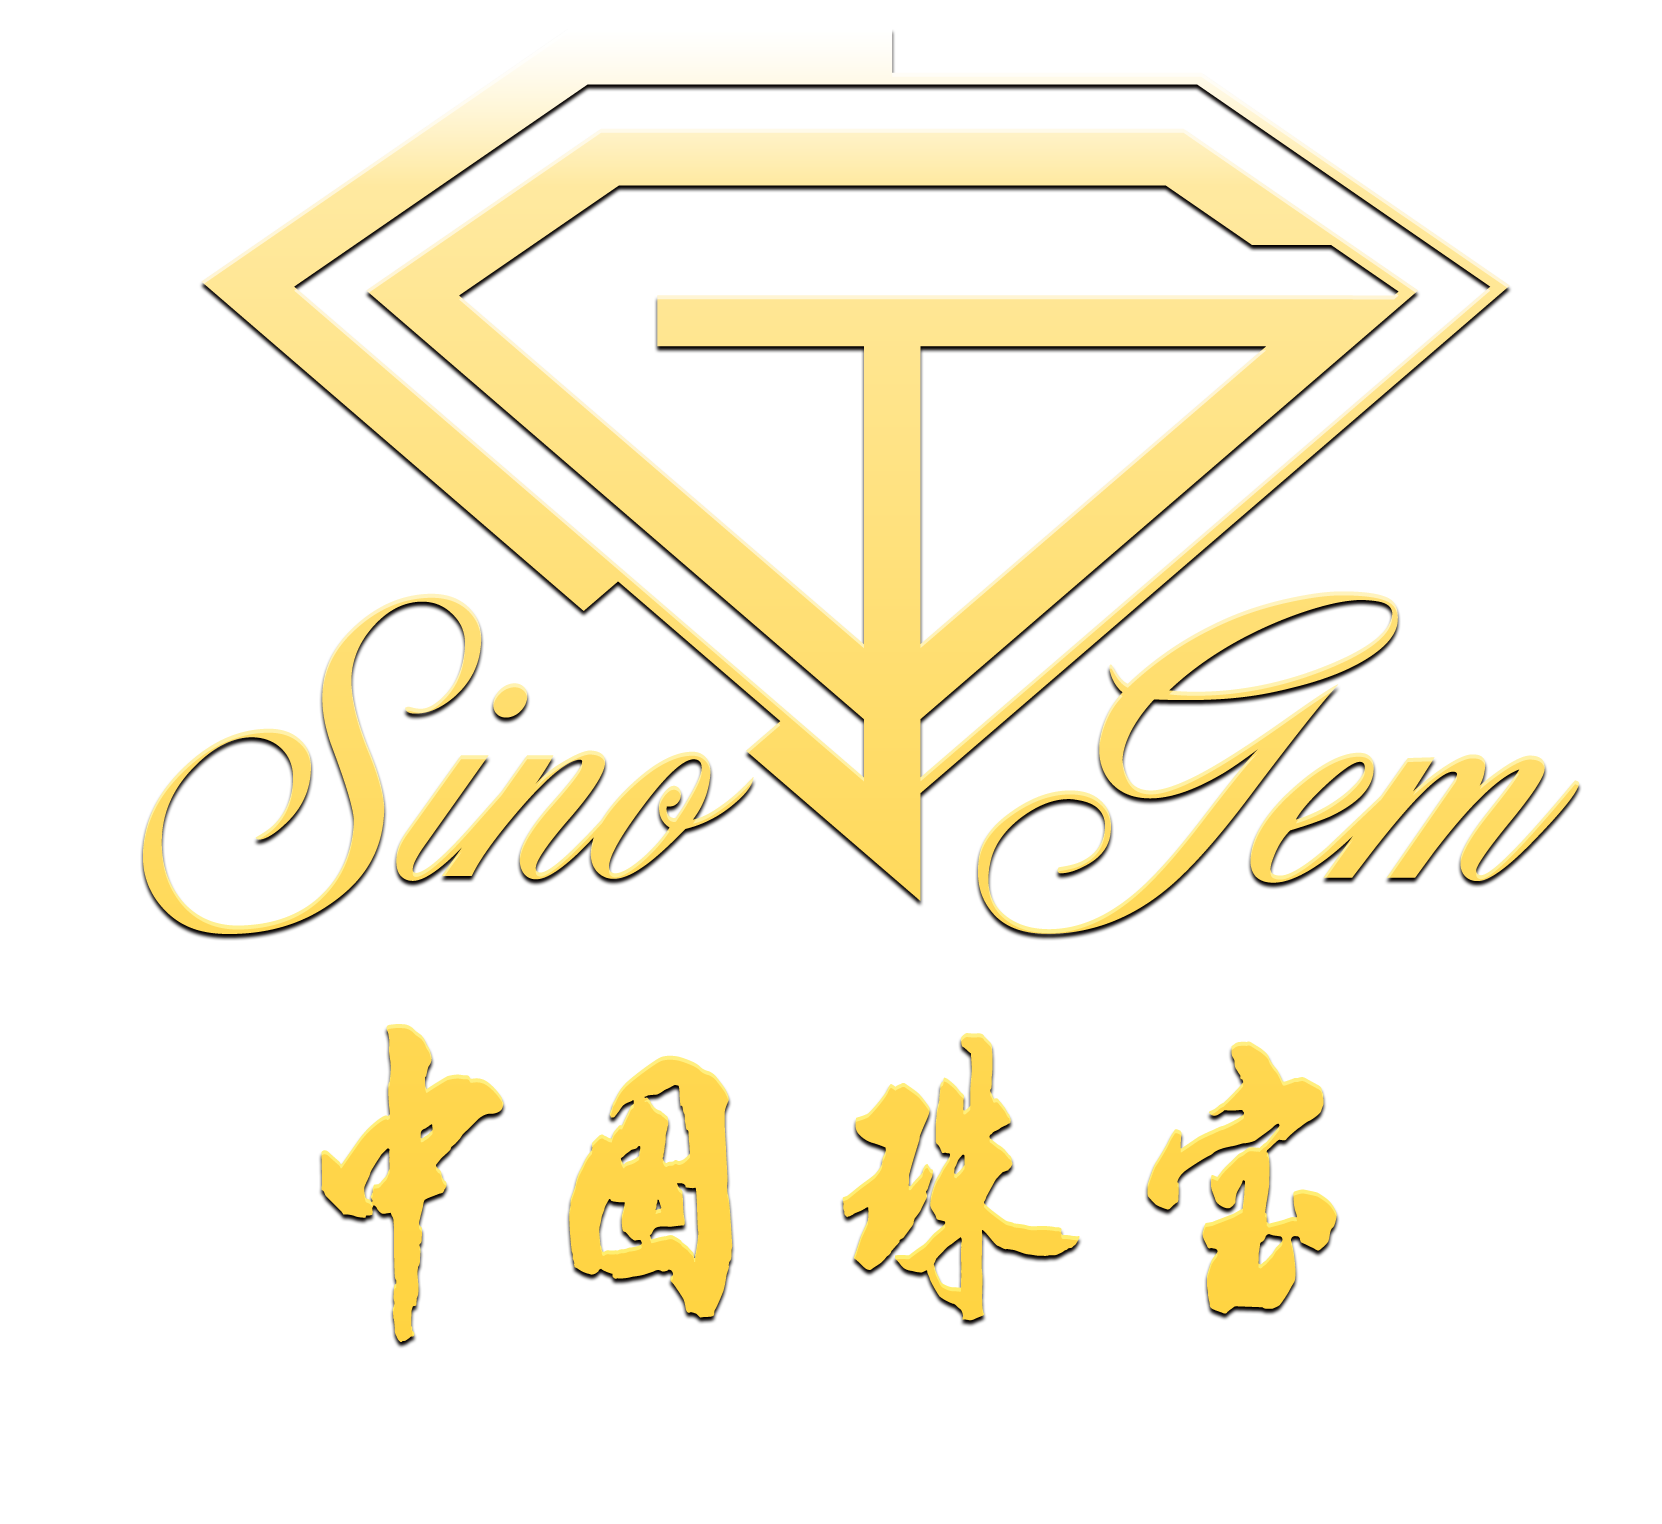 中国珠宝钢印logo图片图片